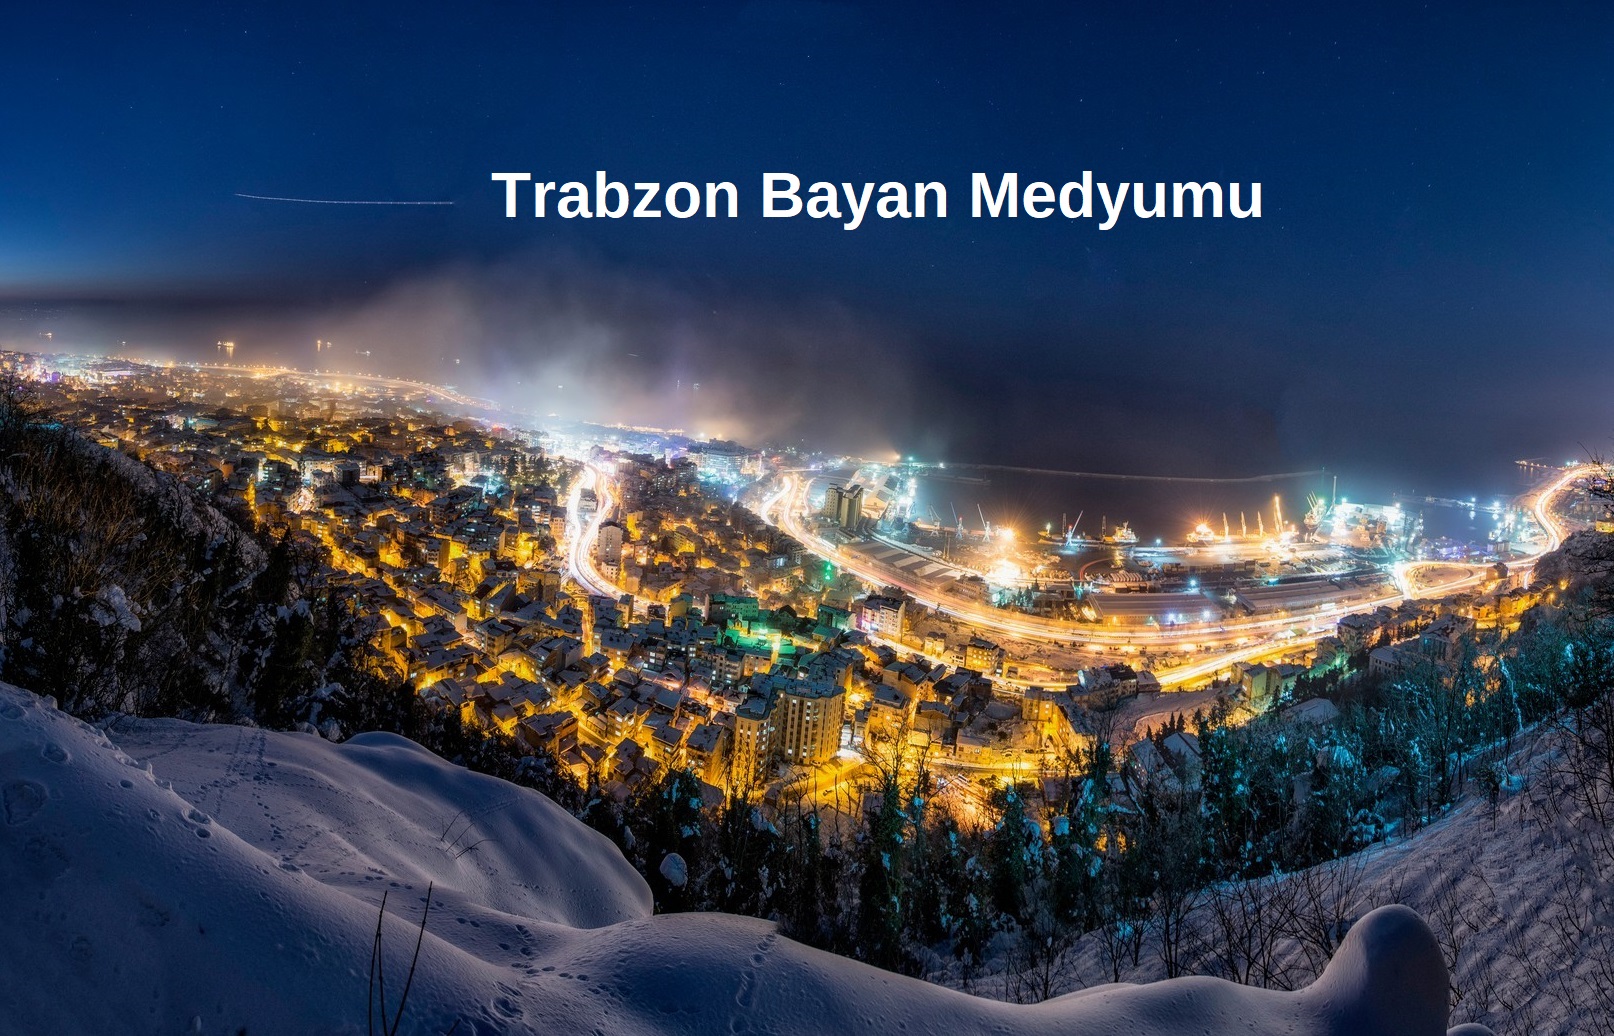 Trabzon Bayan Medyumu